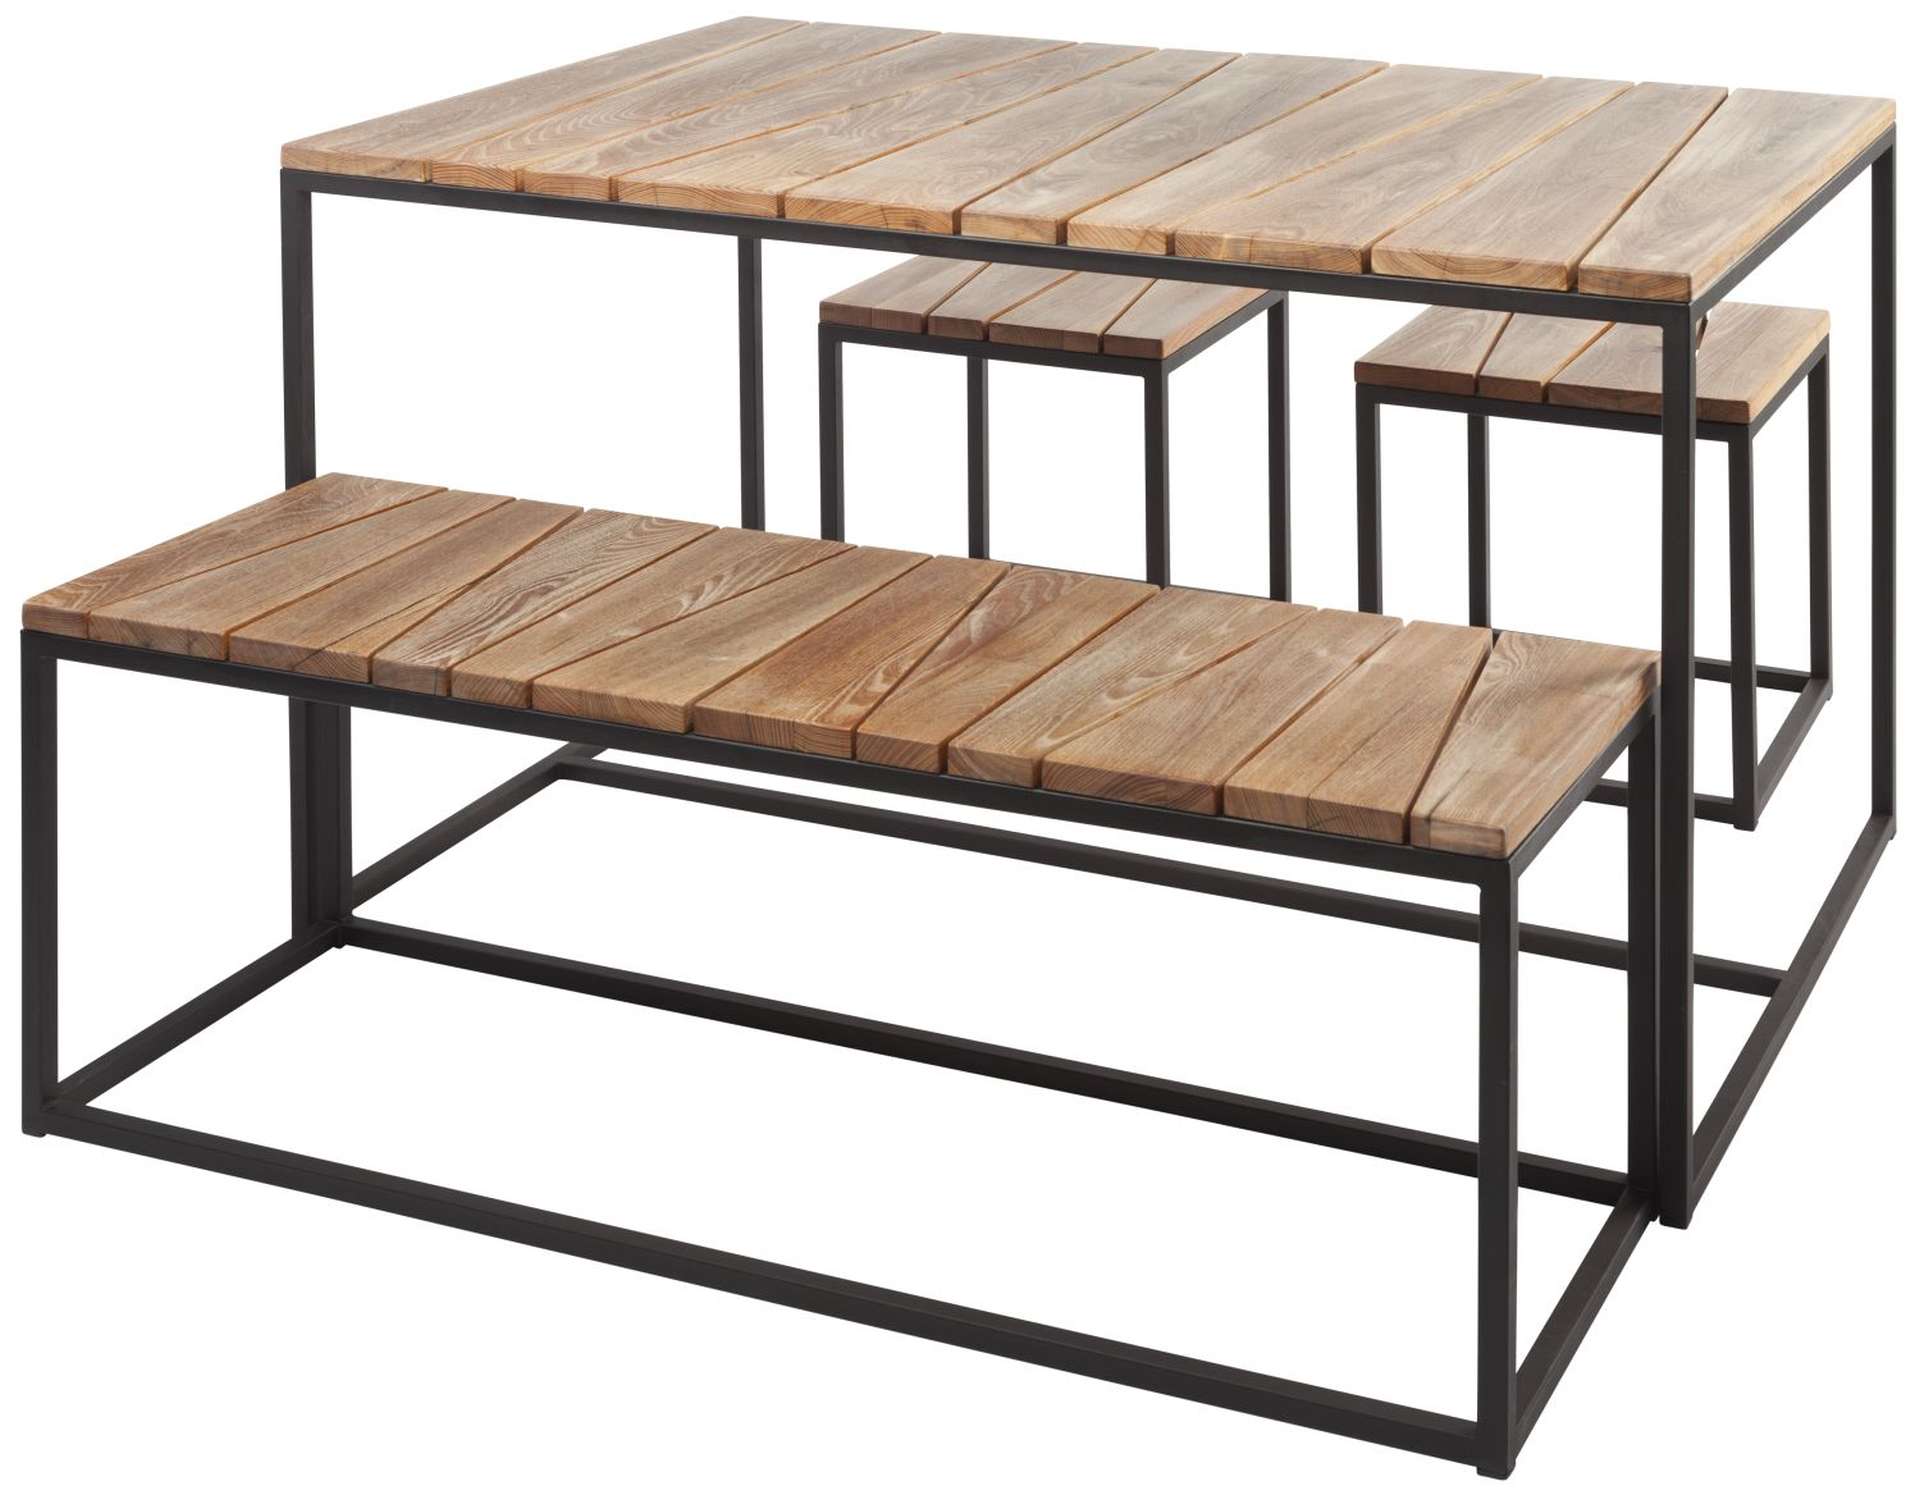 Die Tischgruppe Alois der Marke Jan Kurtz überzeugt mit ihrem modernen und schlichtem Design. Gefertigt wurde die Tischgruppe aus massivem Robinienholz und Metall.